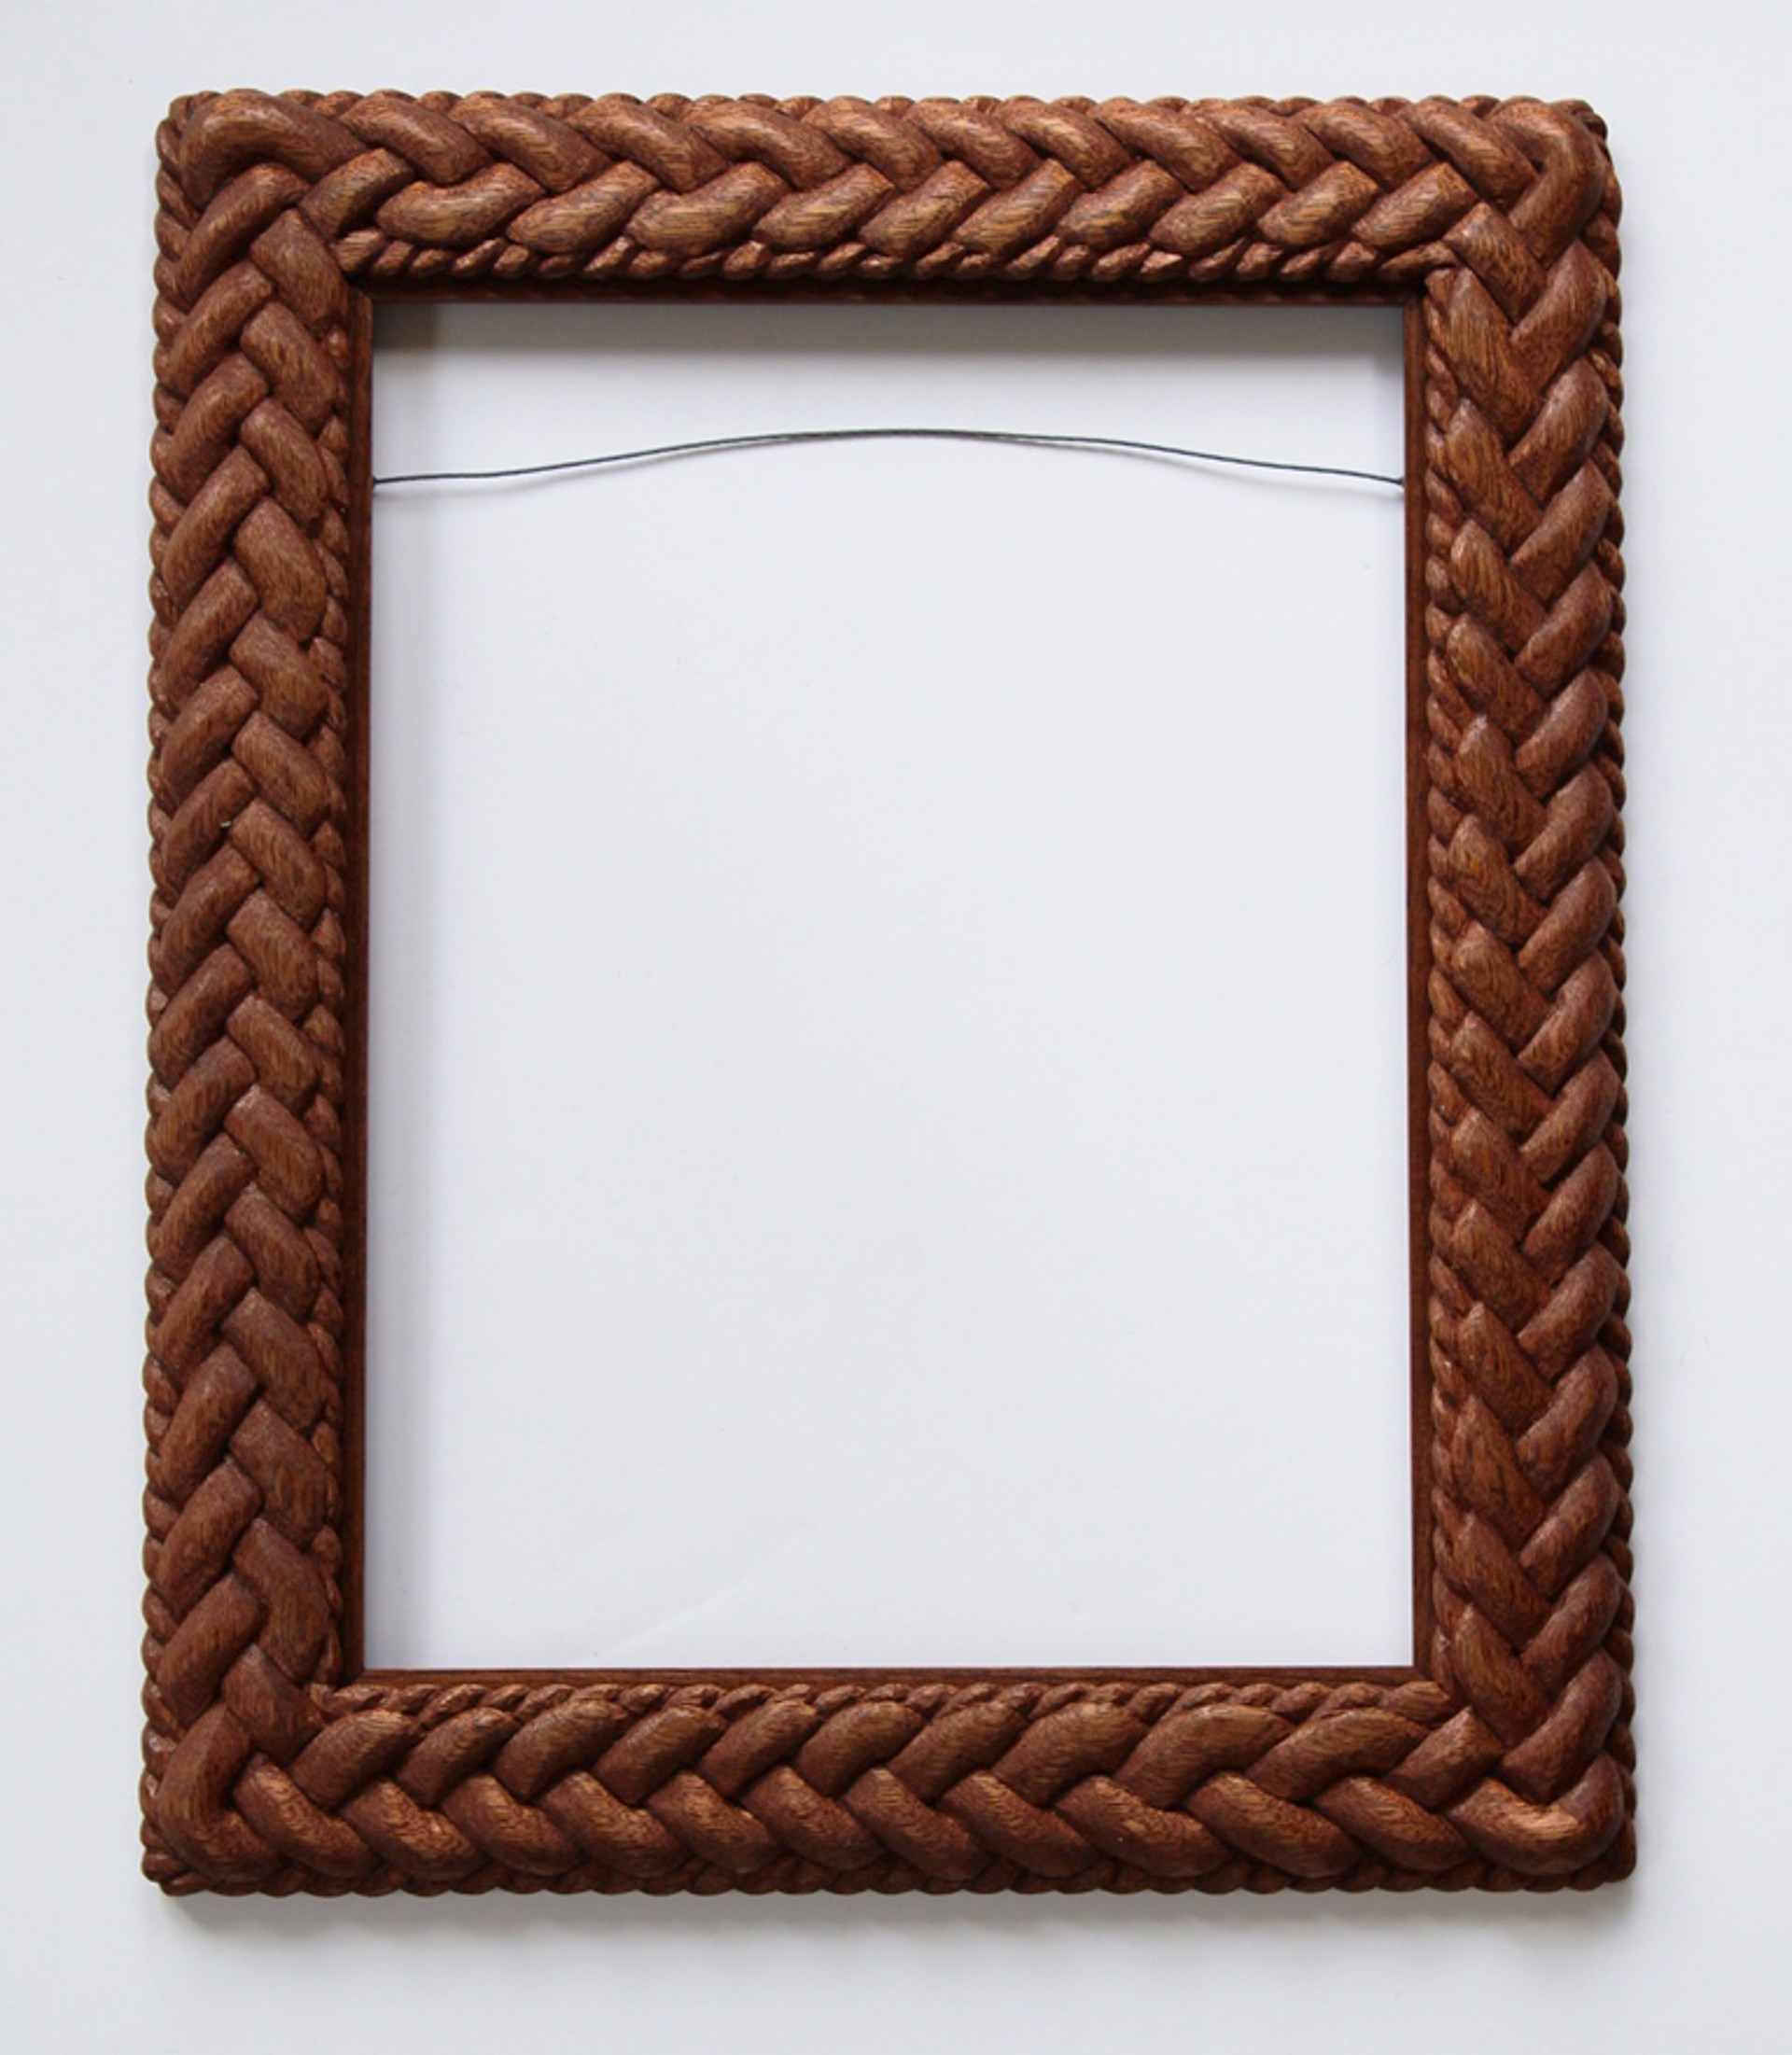 Walnut and Mahogany Framed Mirror by Traci Rhoades